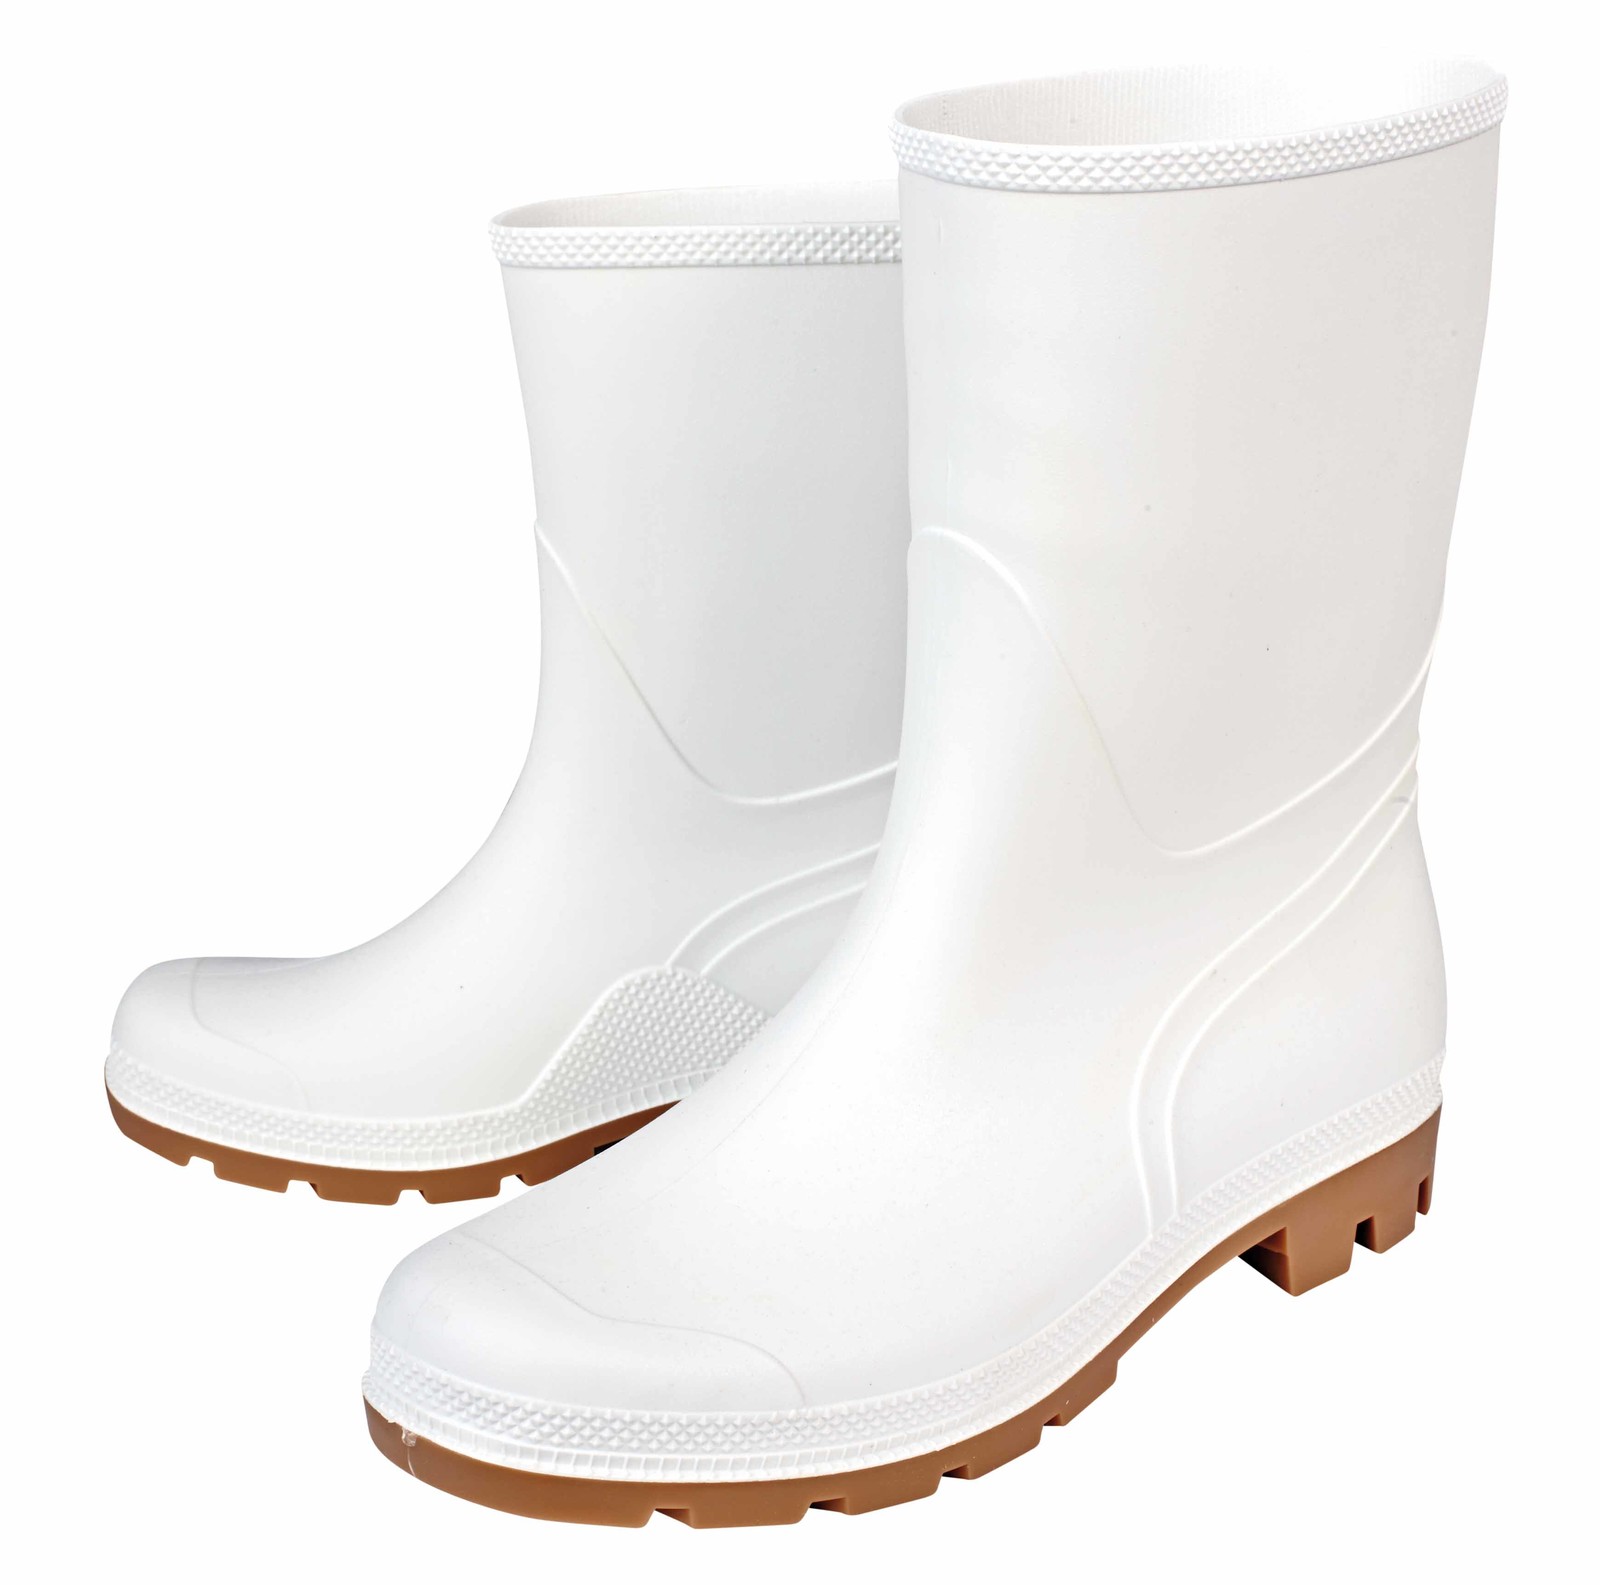 Gumáky Boots Troncheto PVC nízke - veľkosť: 44, farba: biela